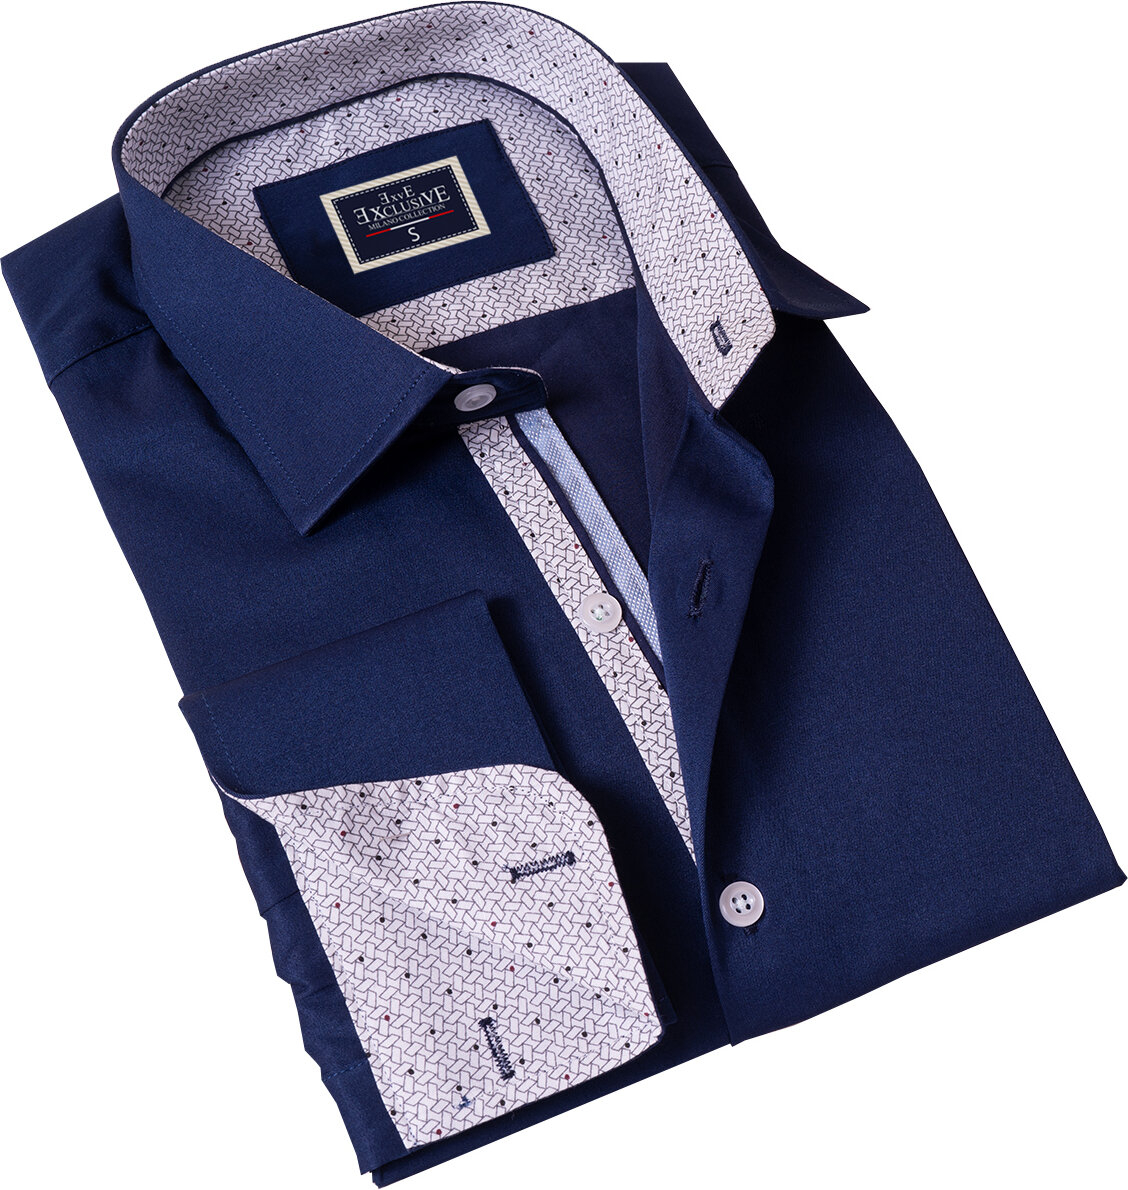 Французская рубашка Exve Exclusive с геометрическим узором бежевого на коричневом с двойными манжетами и запонками в подарочной картонной коробке.